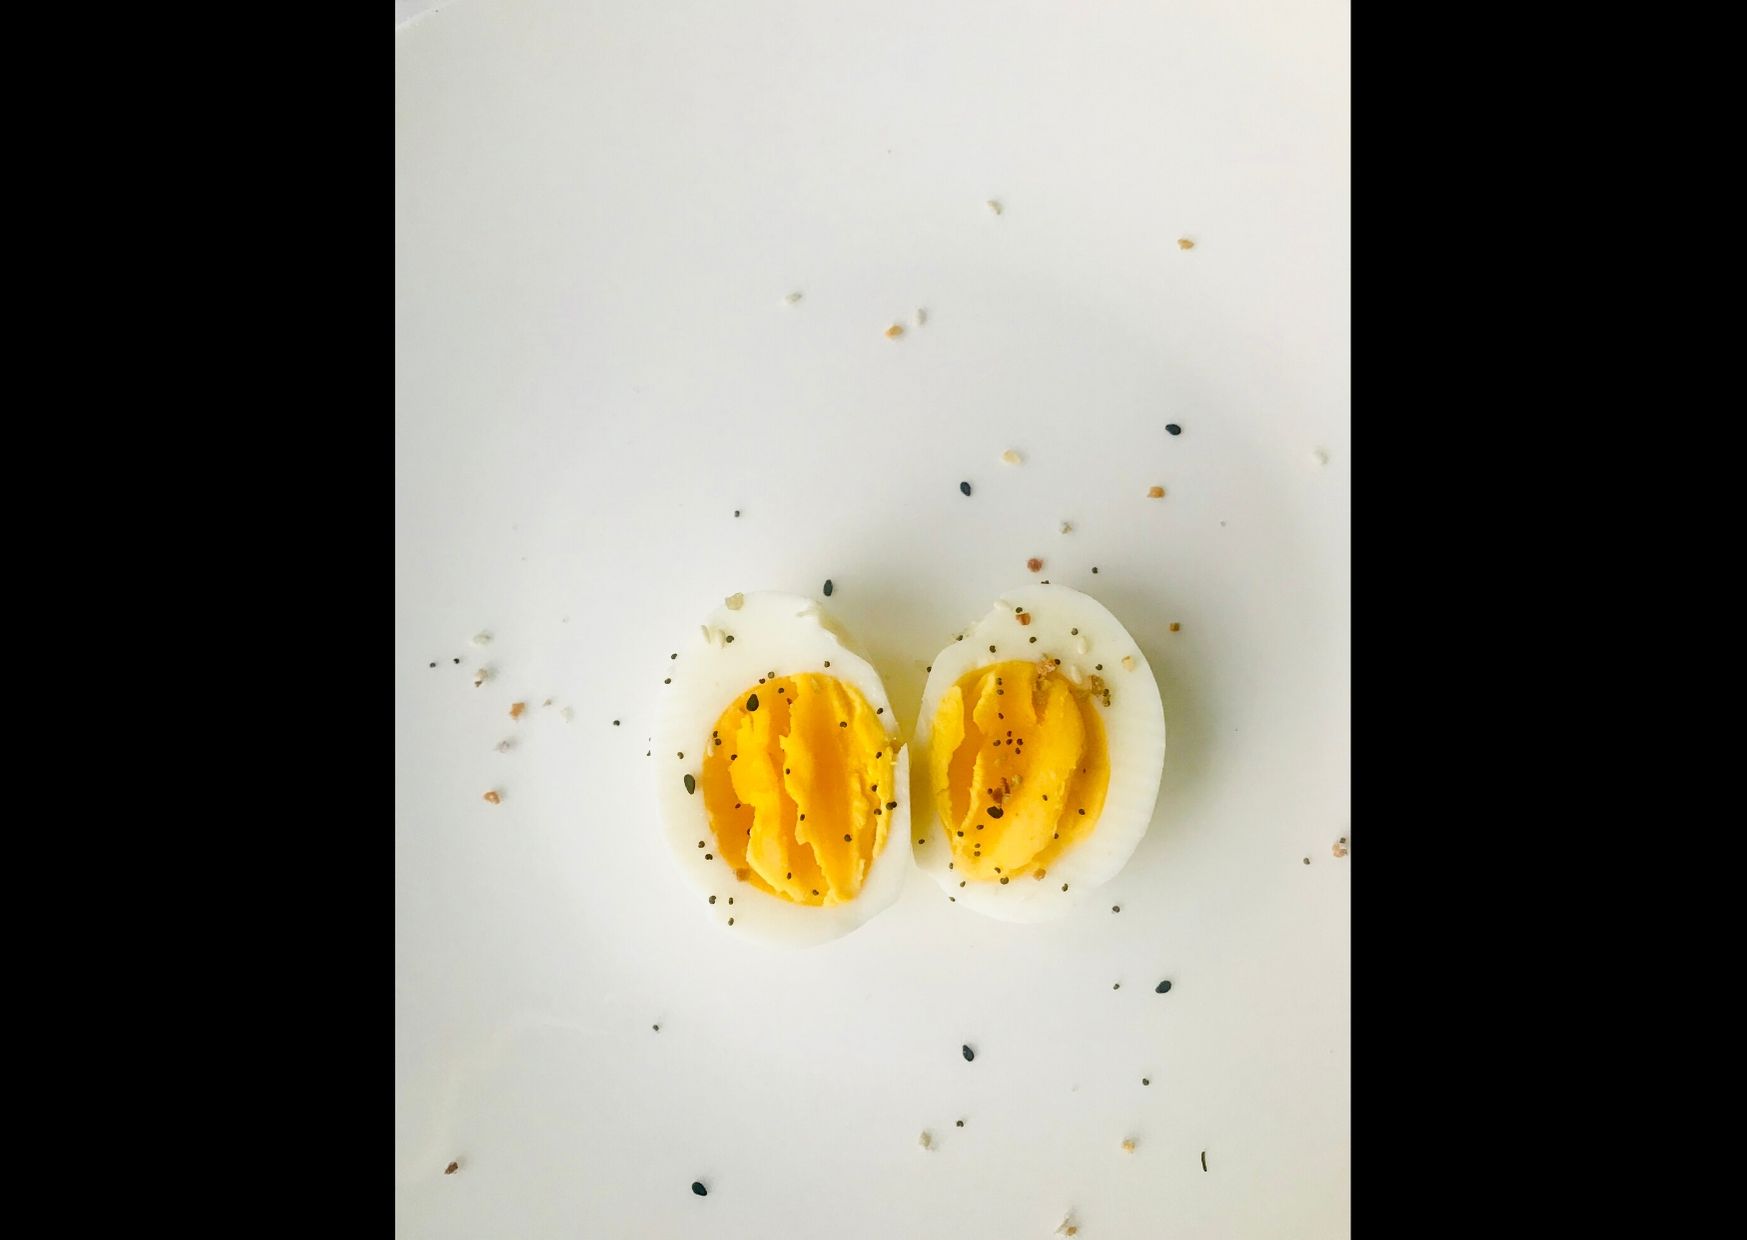 Ricette semplici veloci e leggere: uova sode, quanto e come cuocerle?